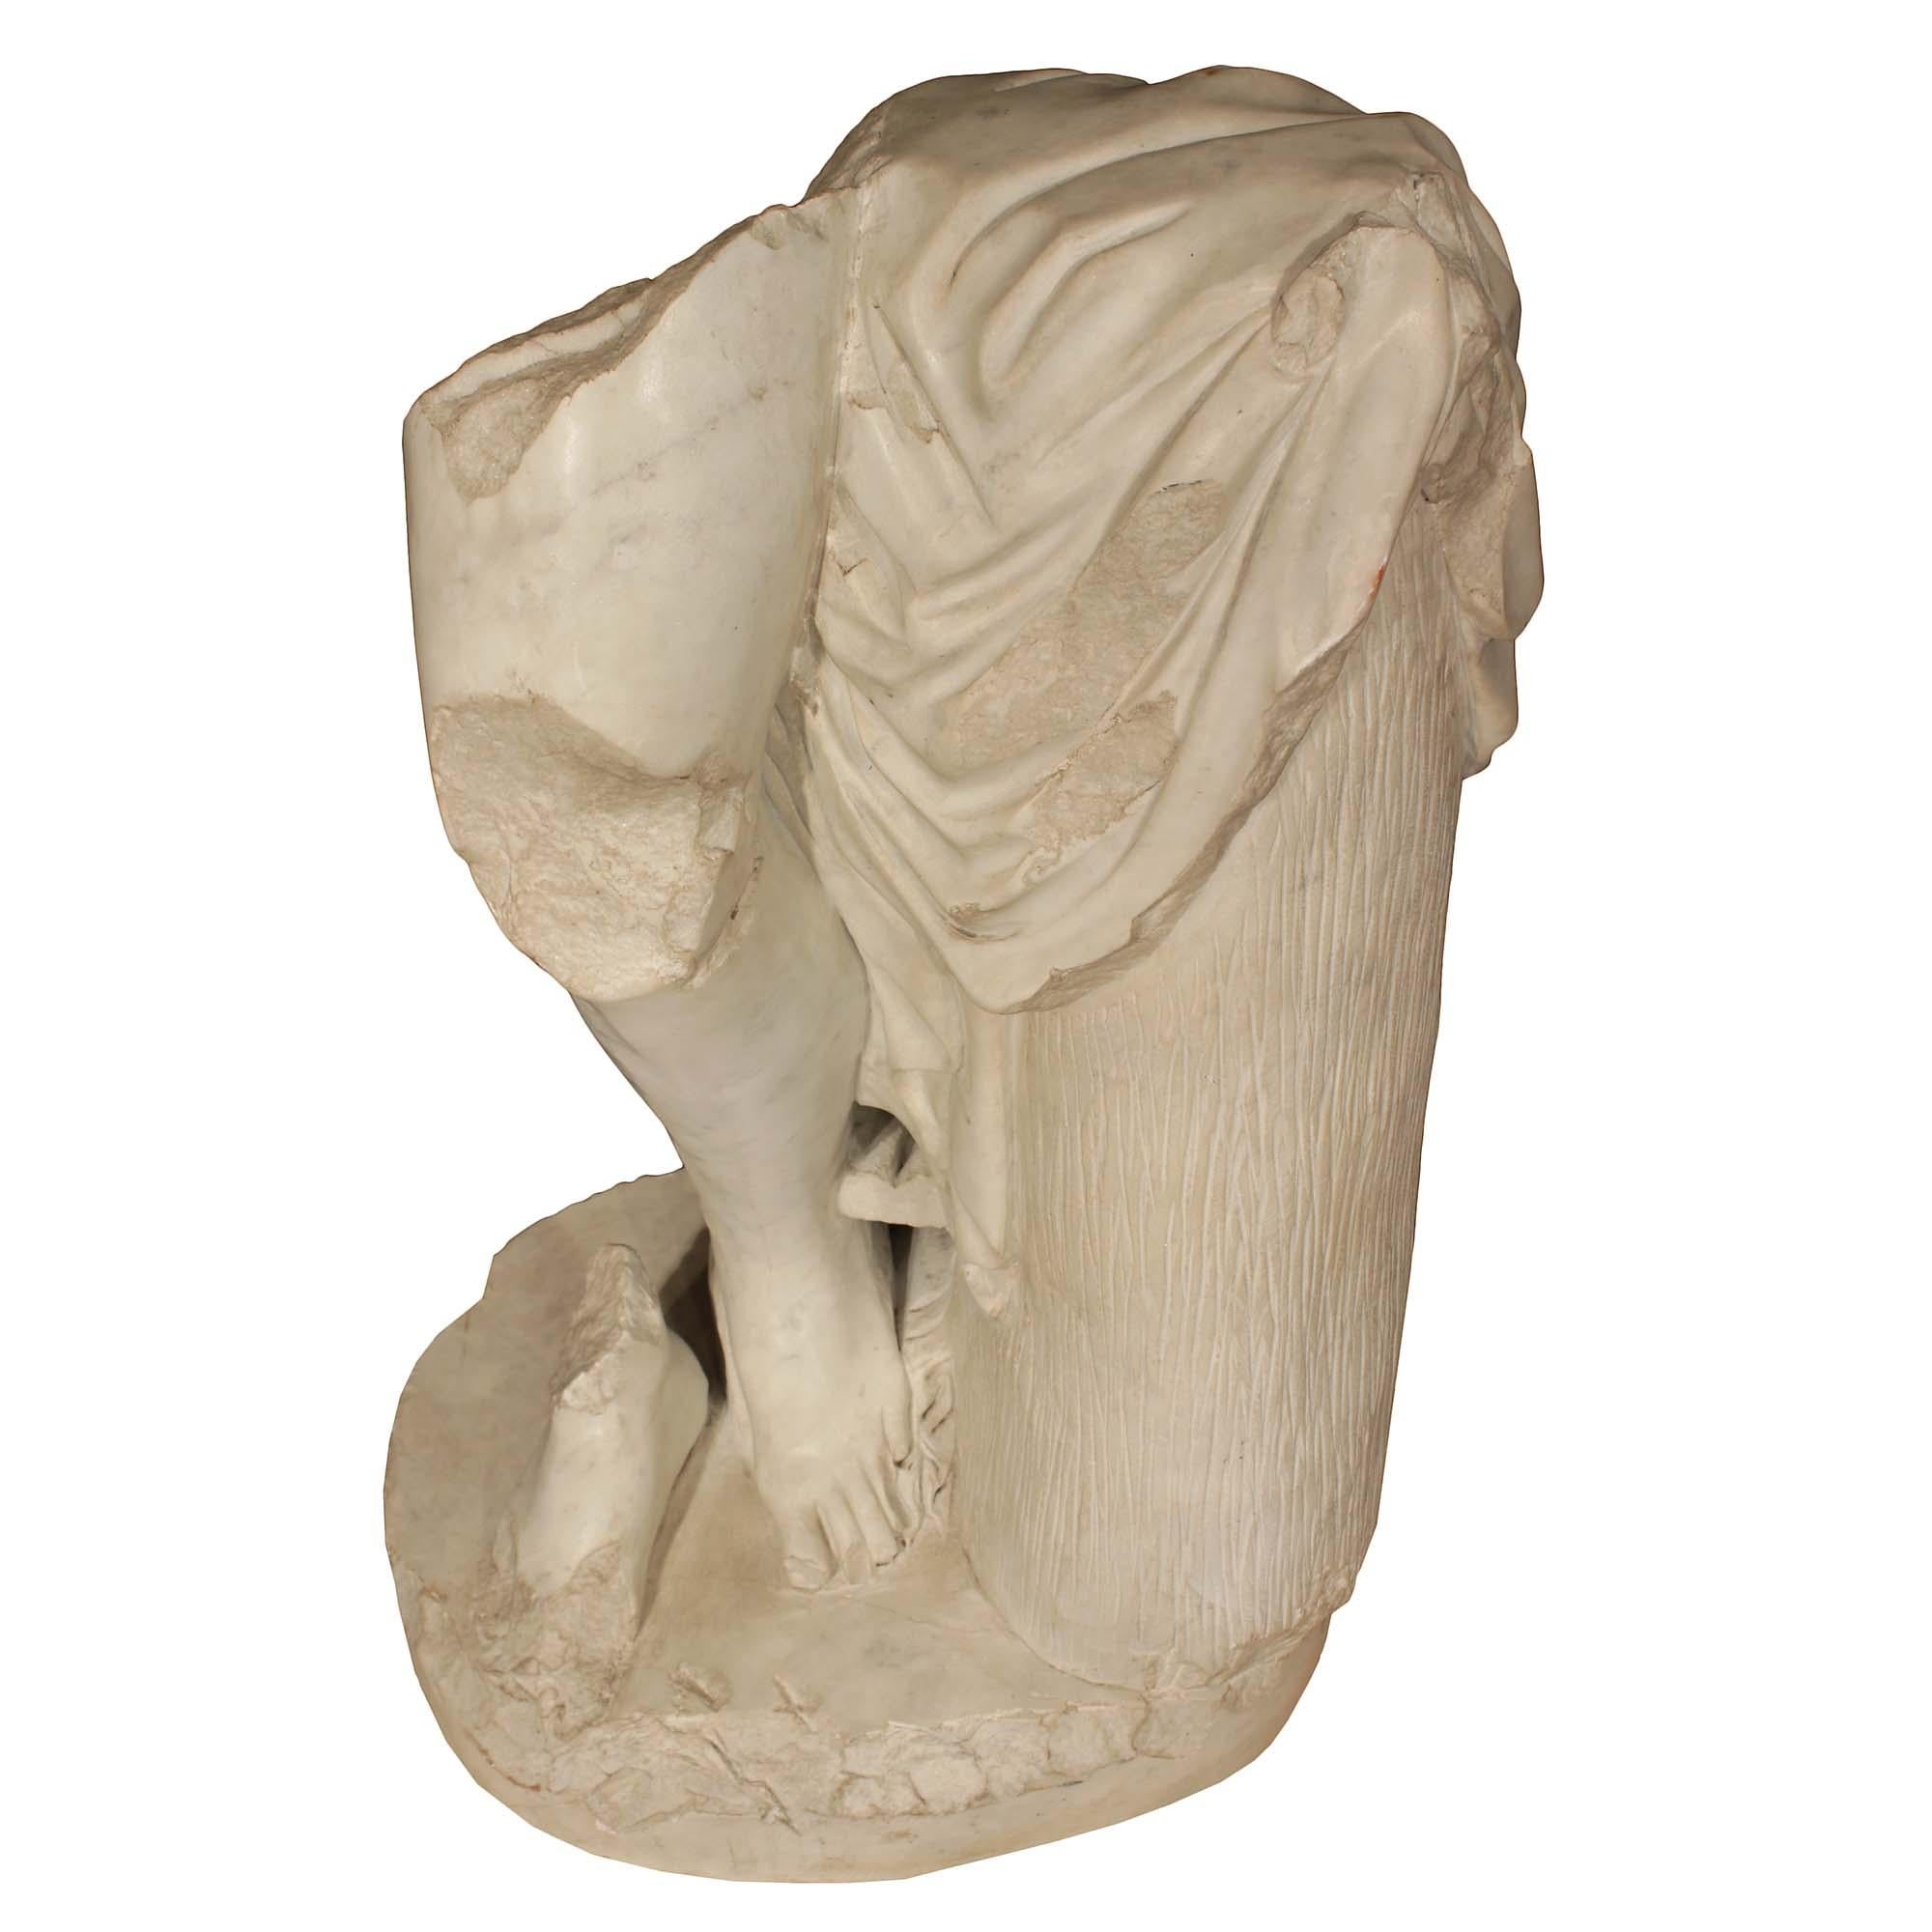 Exceptionnelle et décorative, belle statue en marbre blanc de Carrare italienne du 19ème siècle. Ce spectaculaire fragment de marbre représentant une jambe et des pieds, vraisemblablement une figure classique revêtue d'une cape fluide, à côté d'une